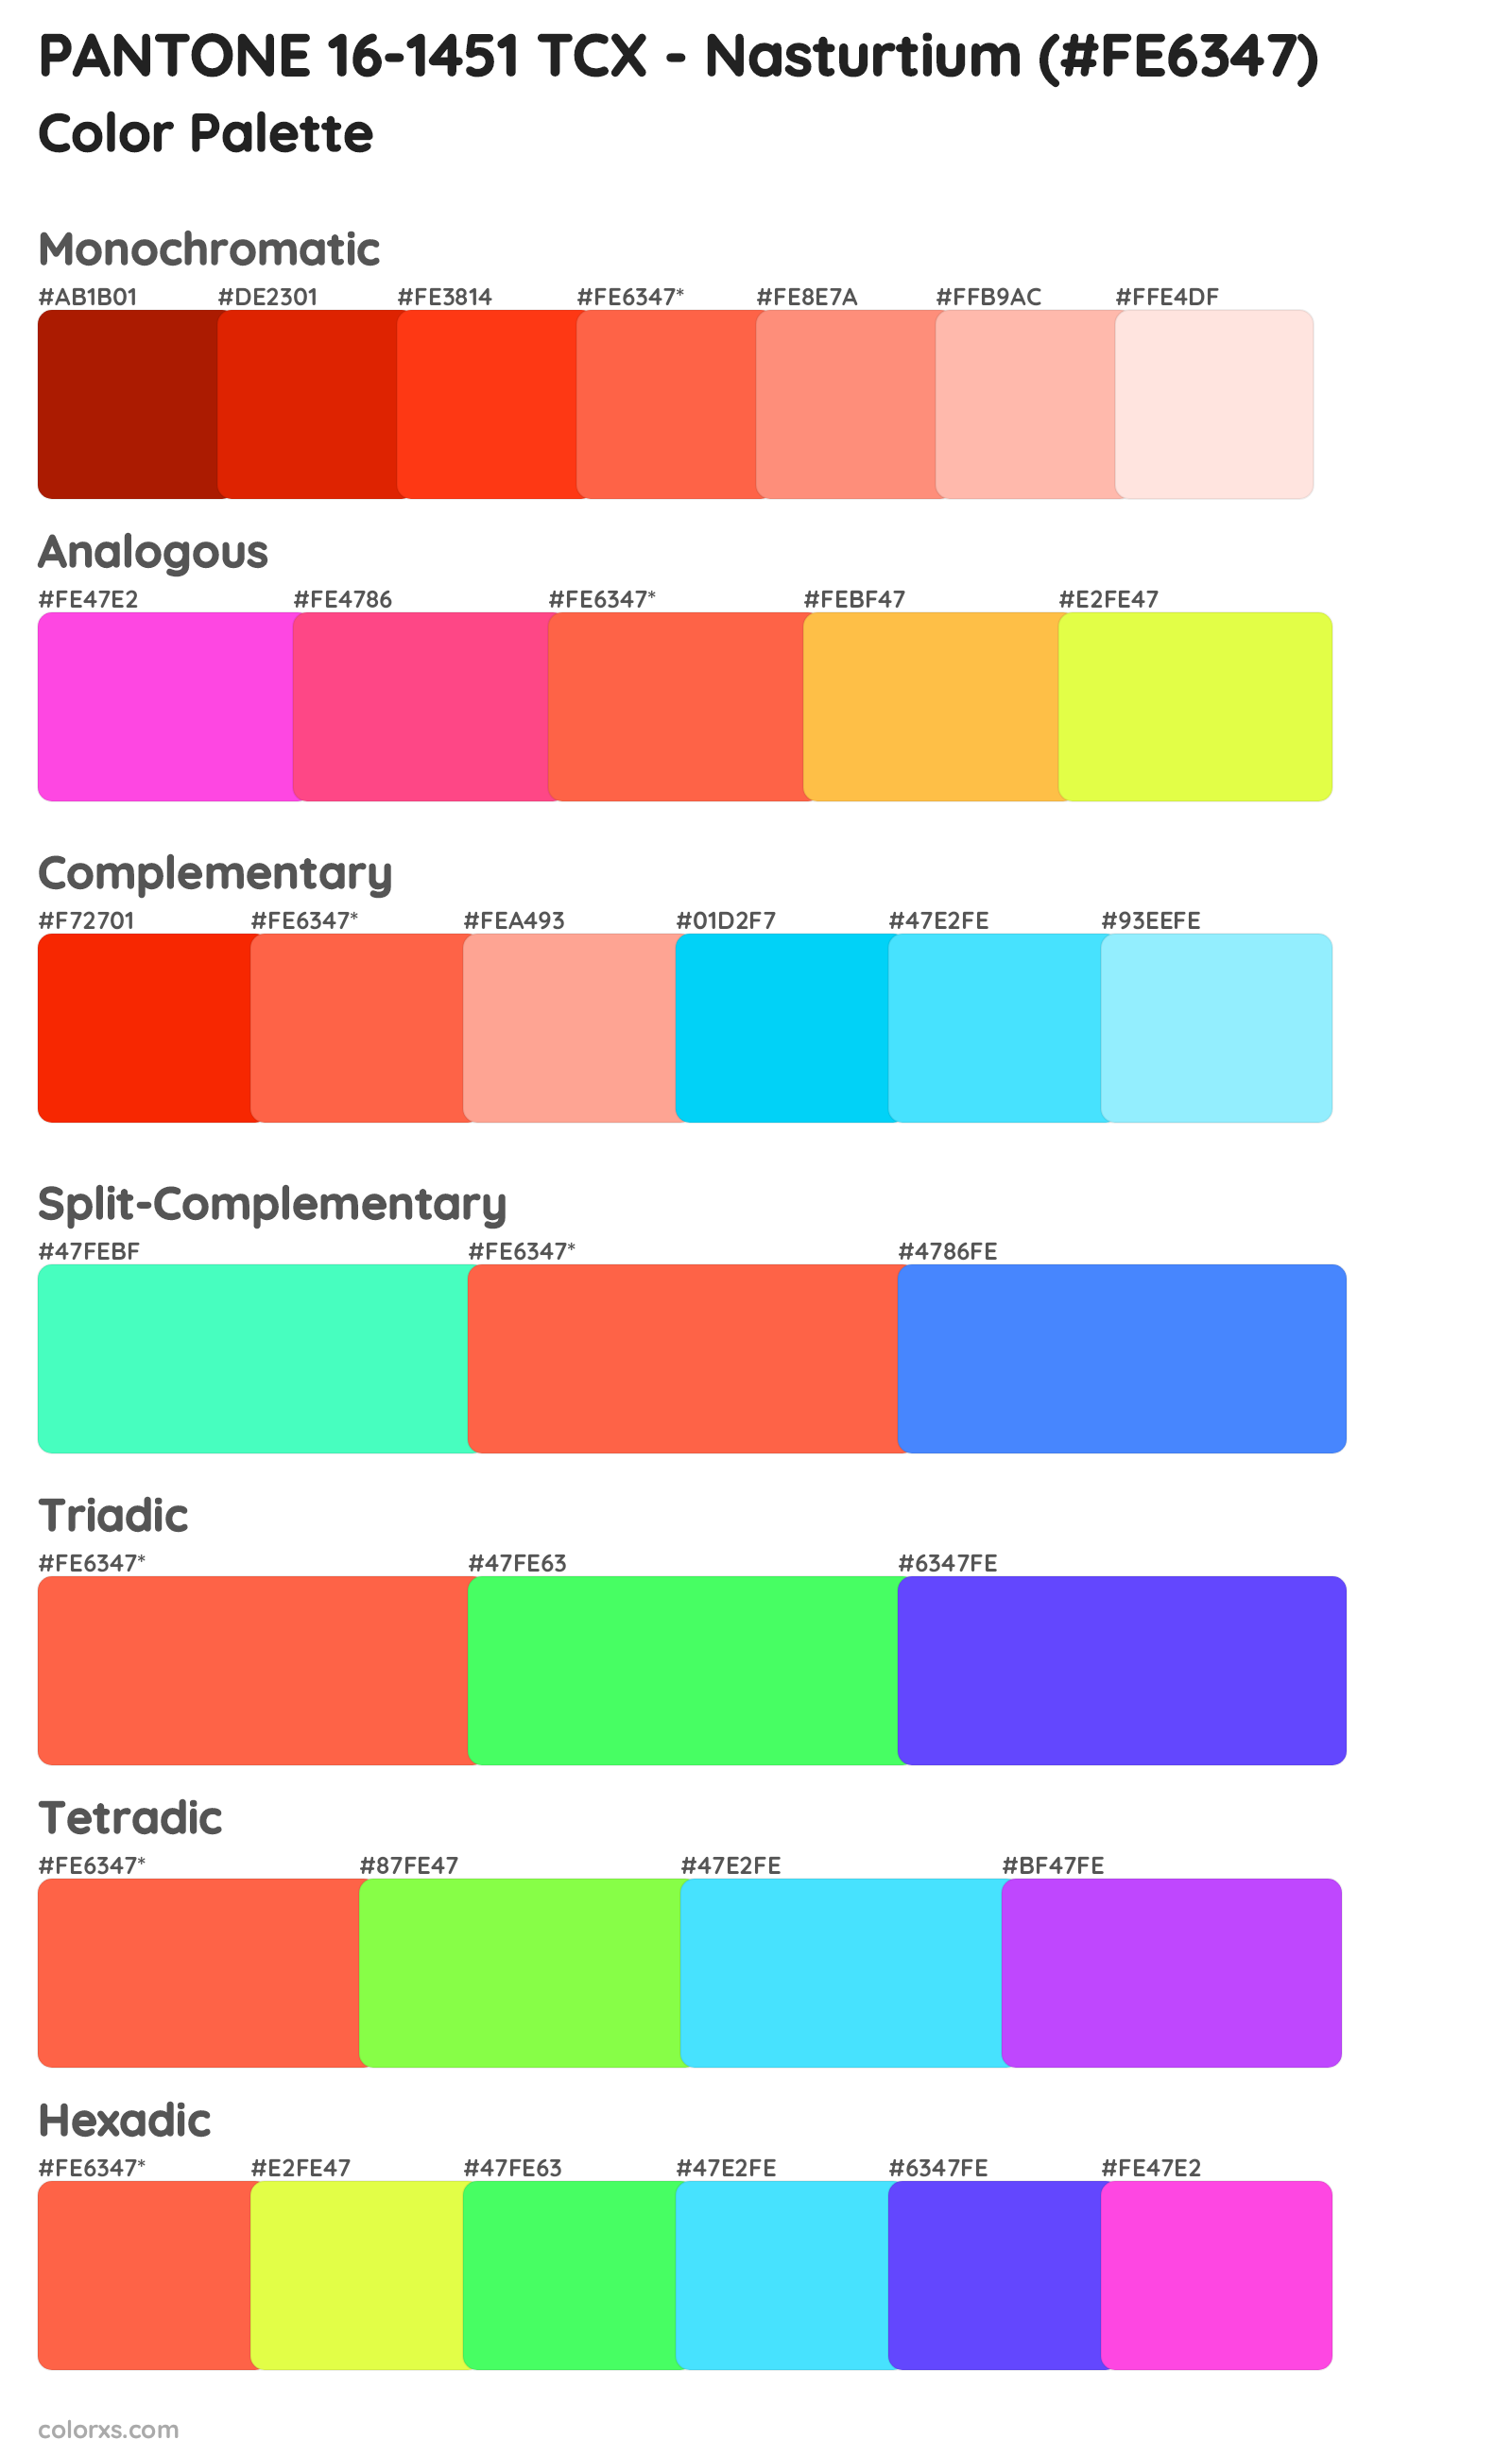 PANTONE 16-1451 TCX - Nasturtium Color Scheme Palettes